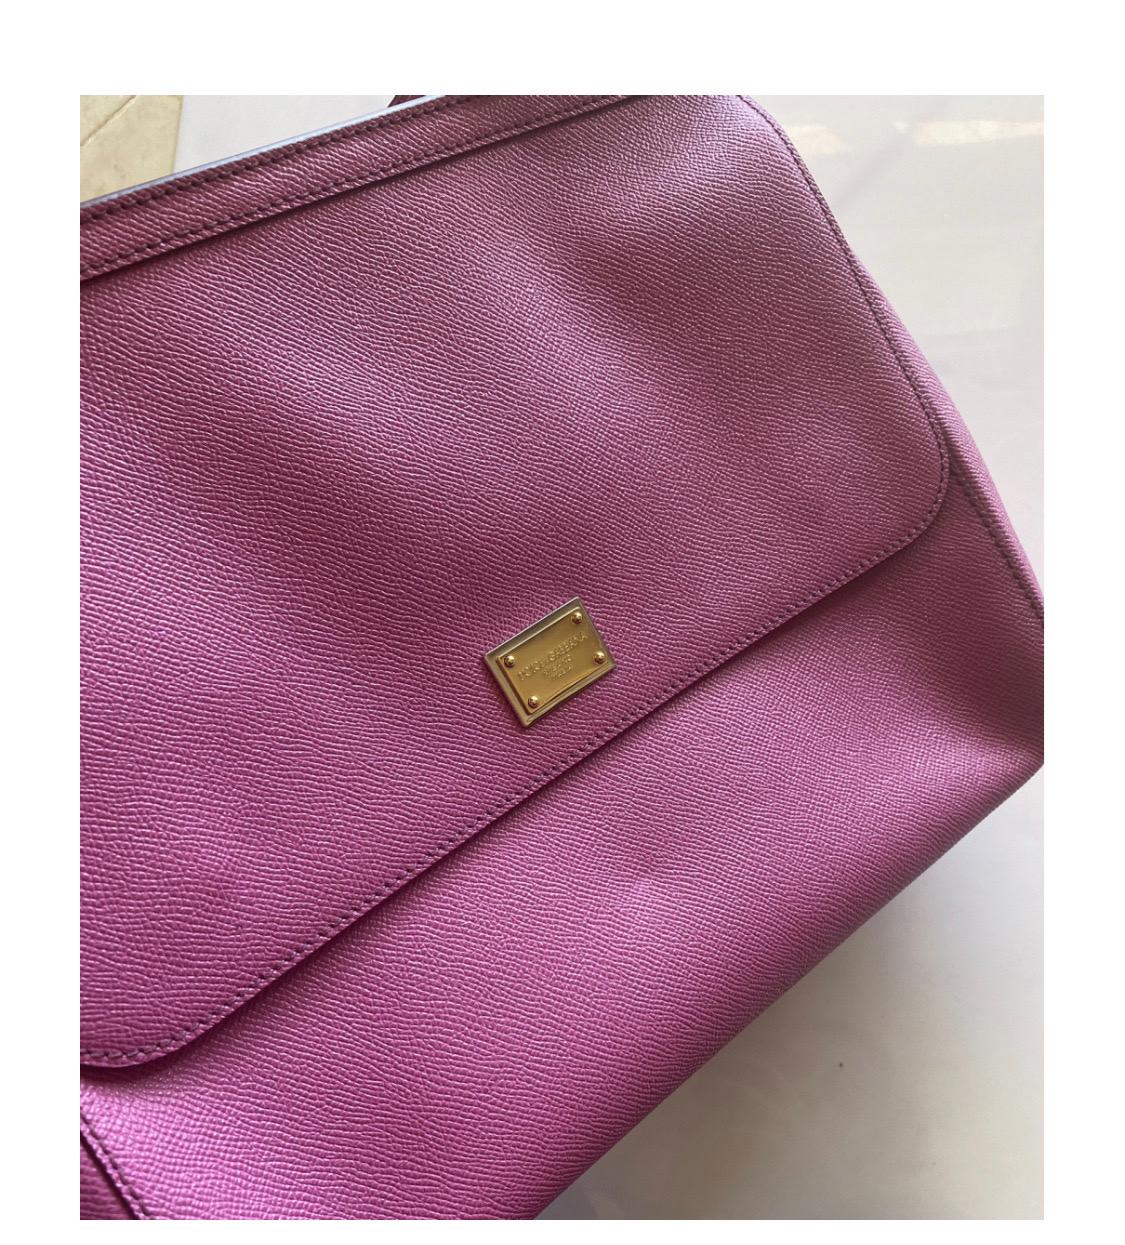 Women's Dolce & Gabbana Pink Large Sicily
bag handbag For Sale